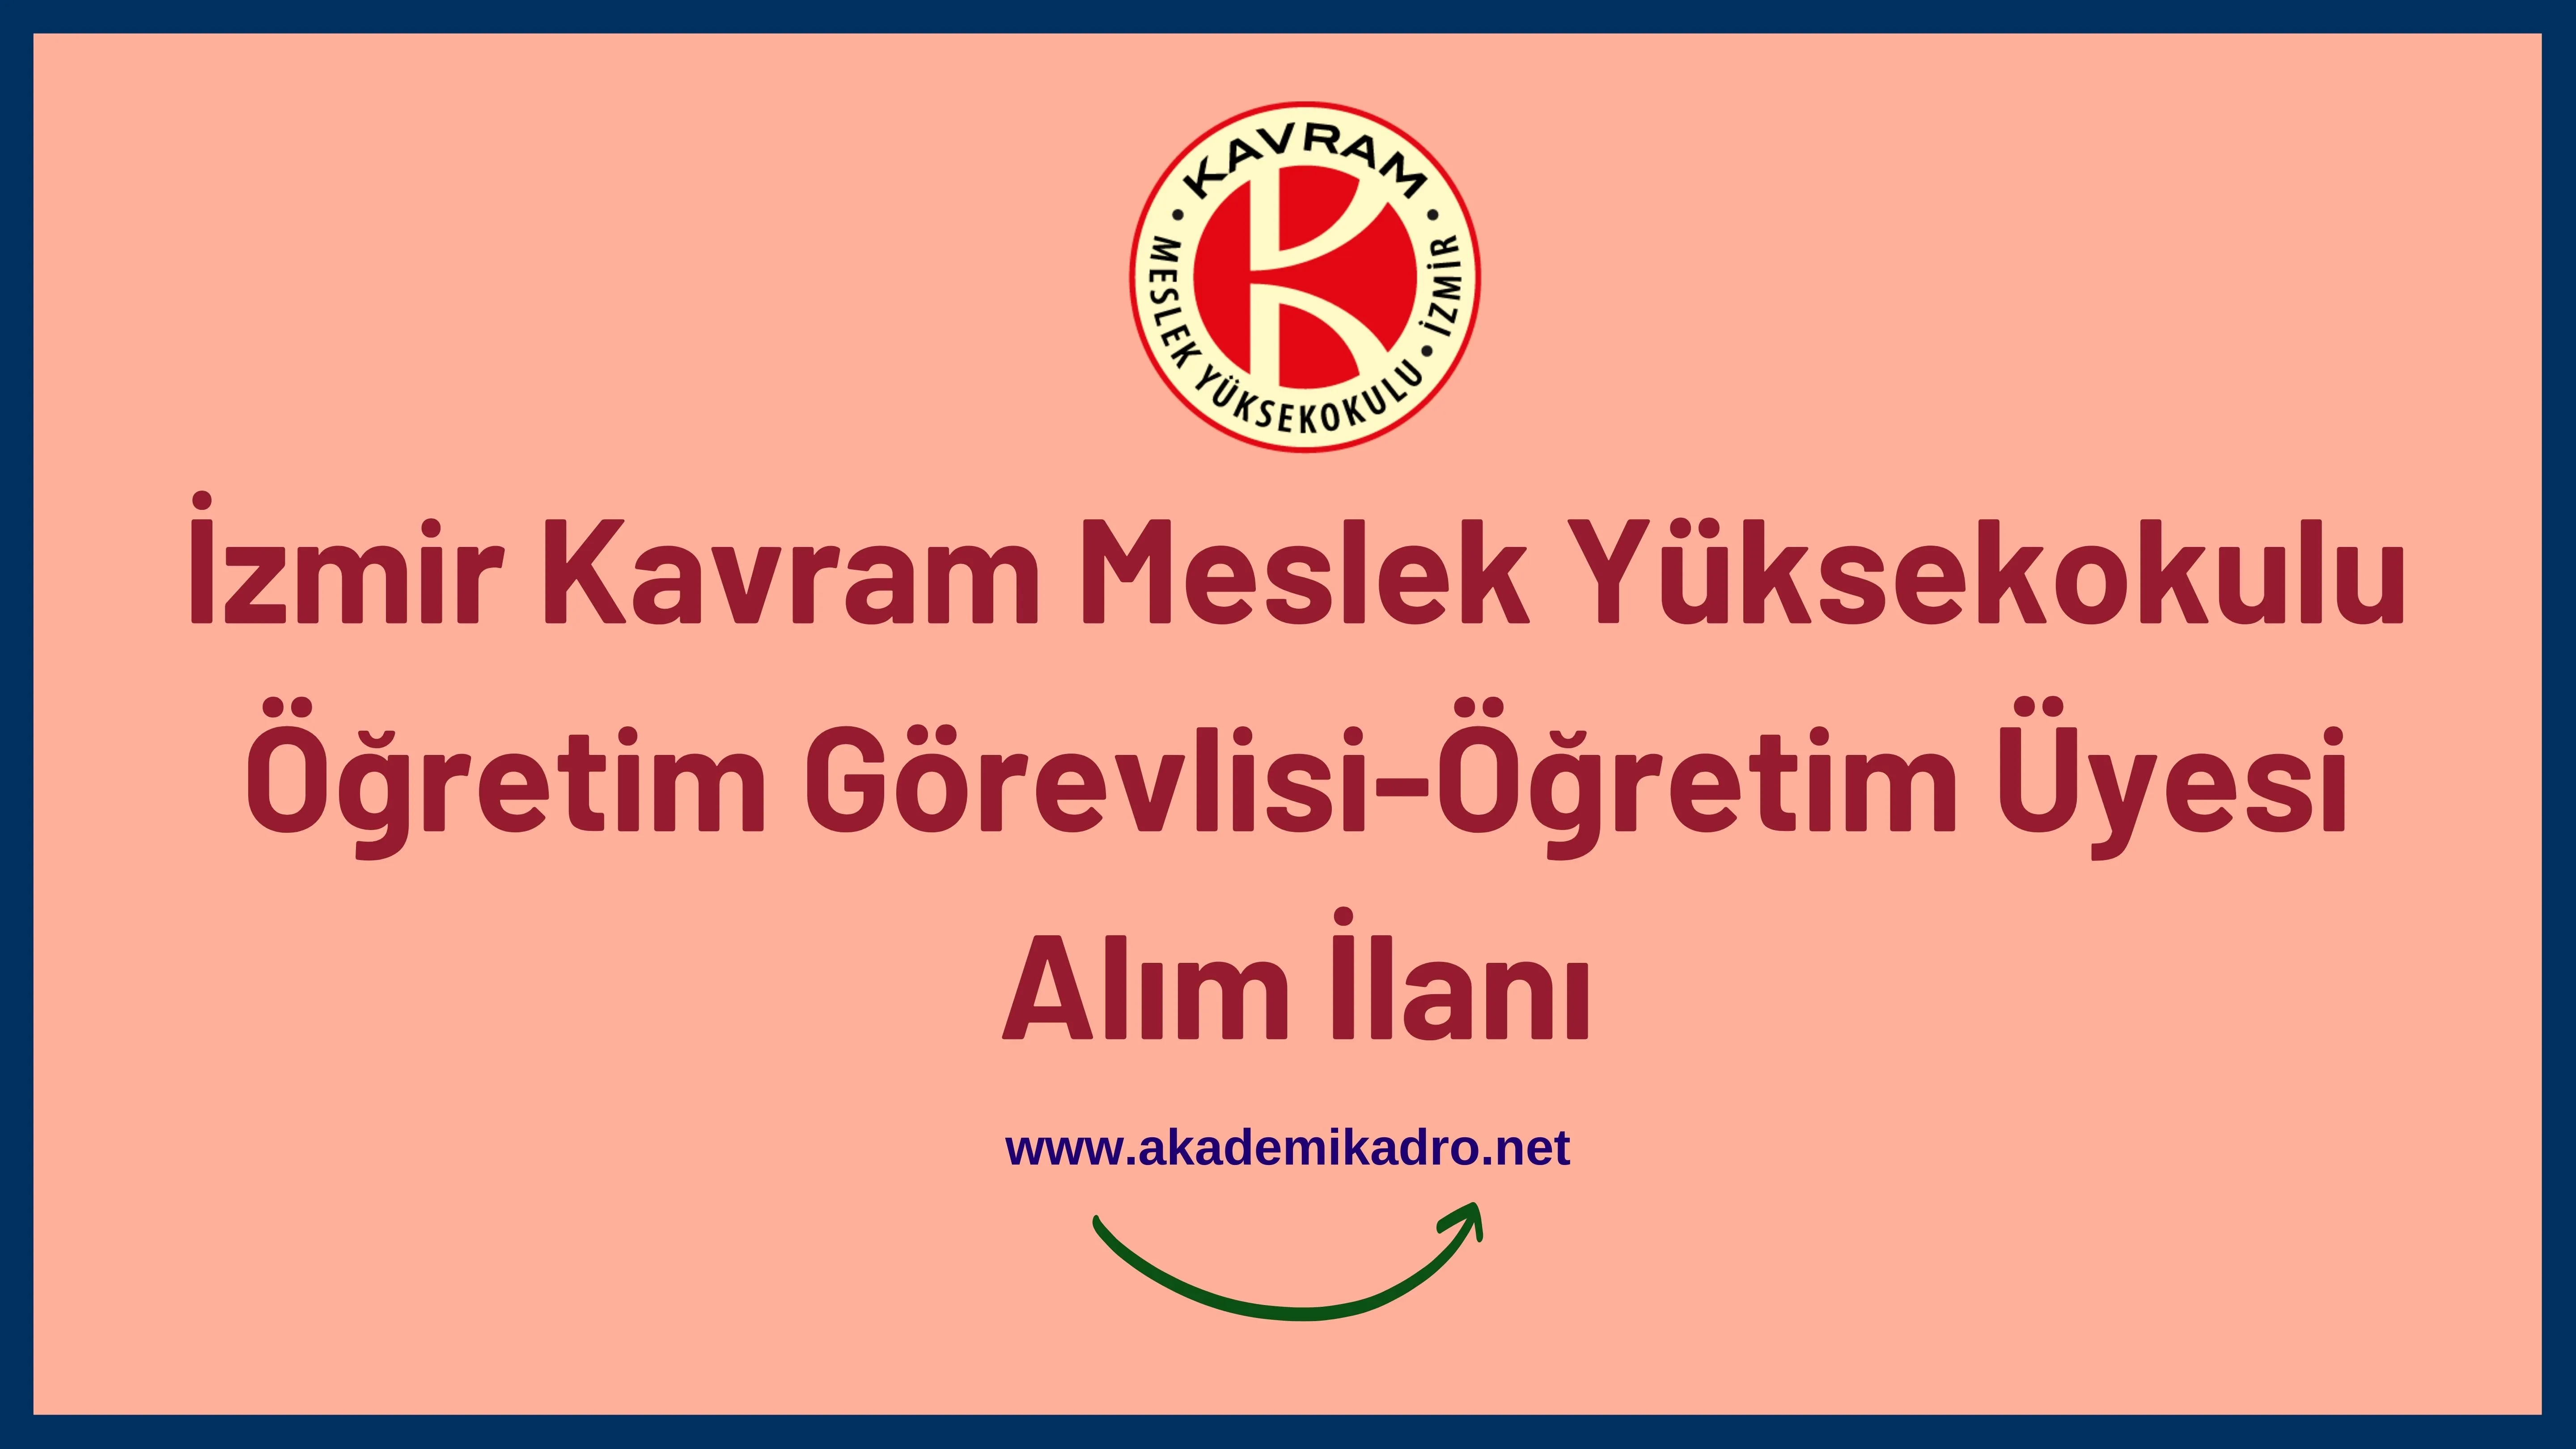 İzmir Kavram Meslek Yüksekokulu öğretim görevlisi ve 3 öğretim üyesi alacak.